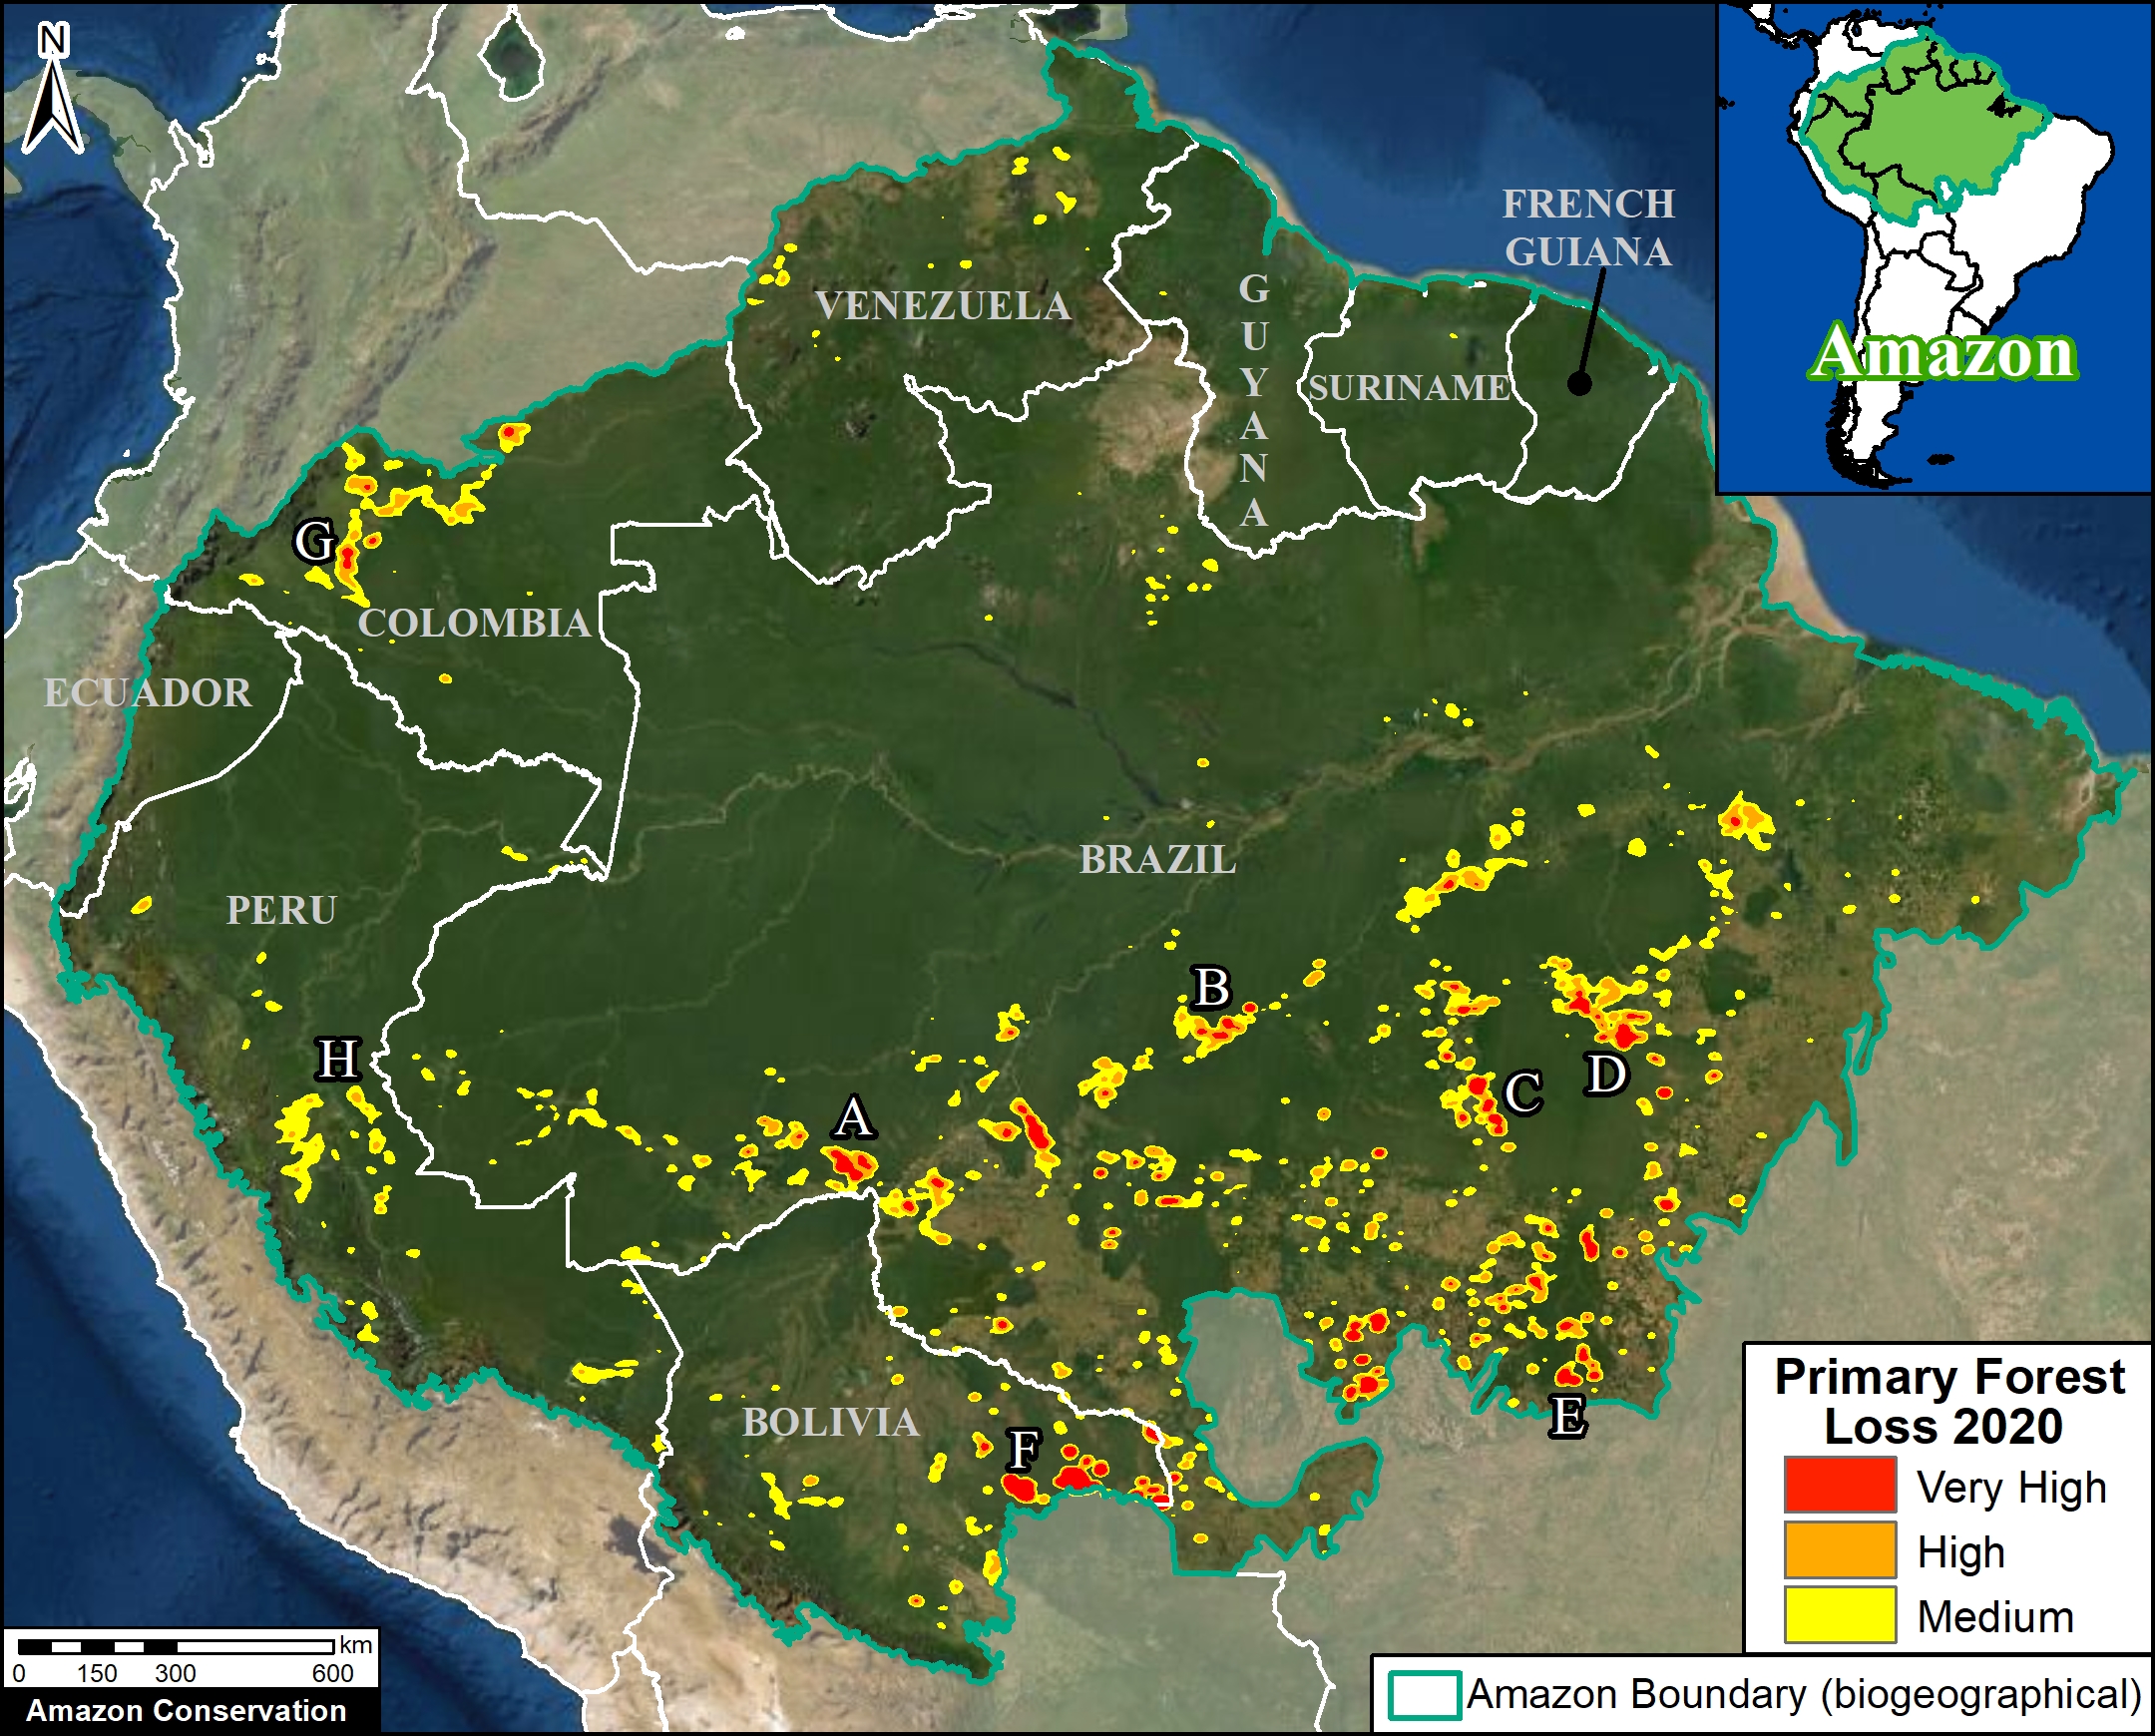 Amazon Forest Deforestation